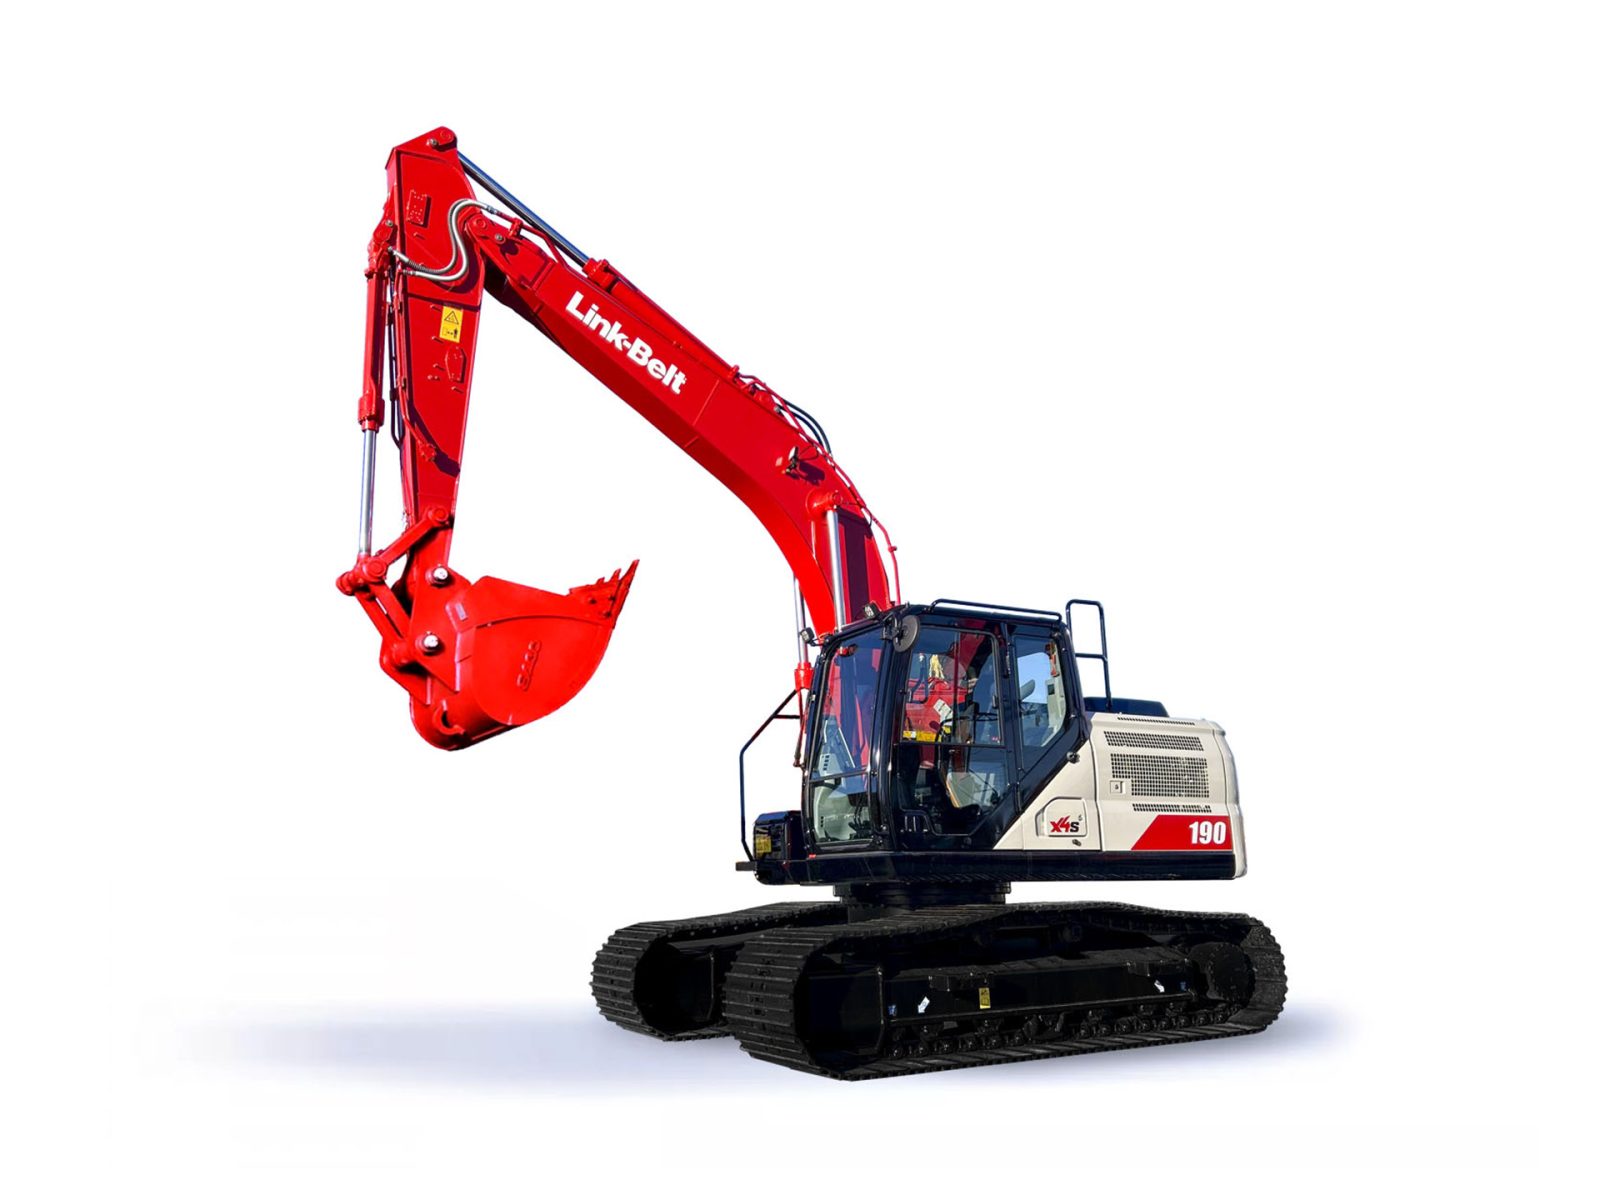 Link-Belt excavator 190X4S | Product Link-Belt excavator 190X4S